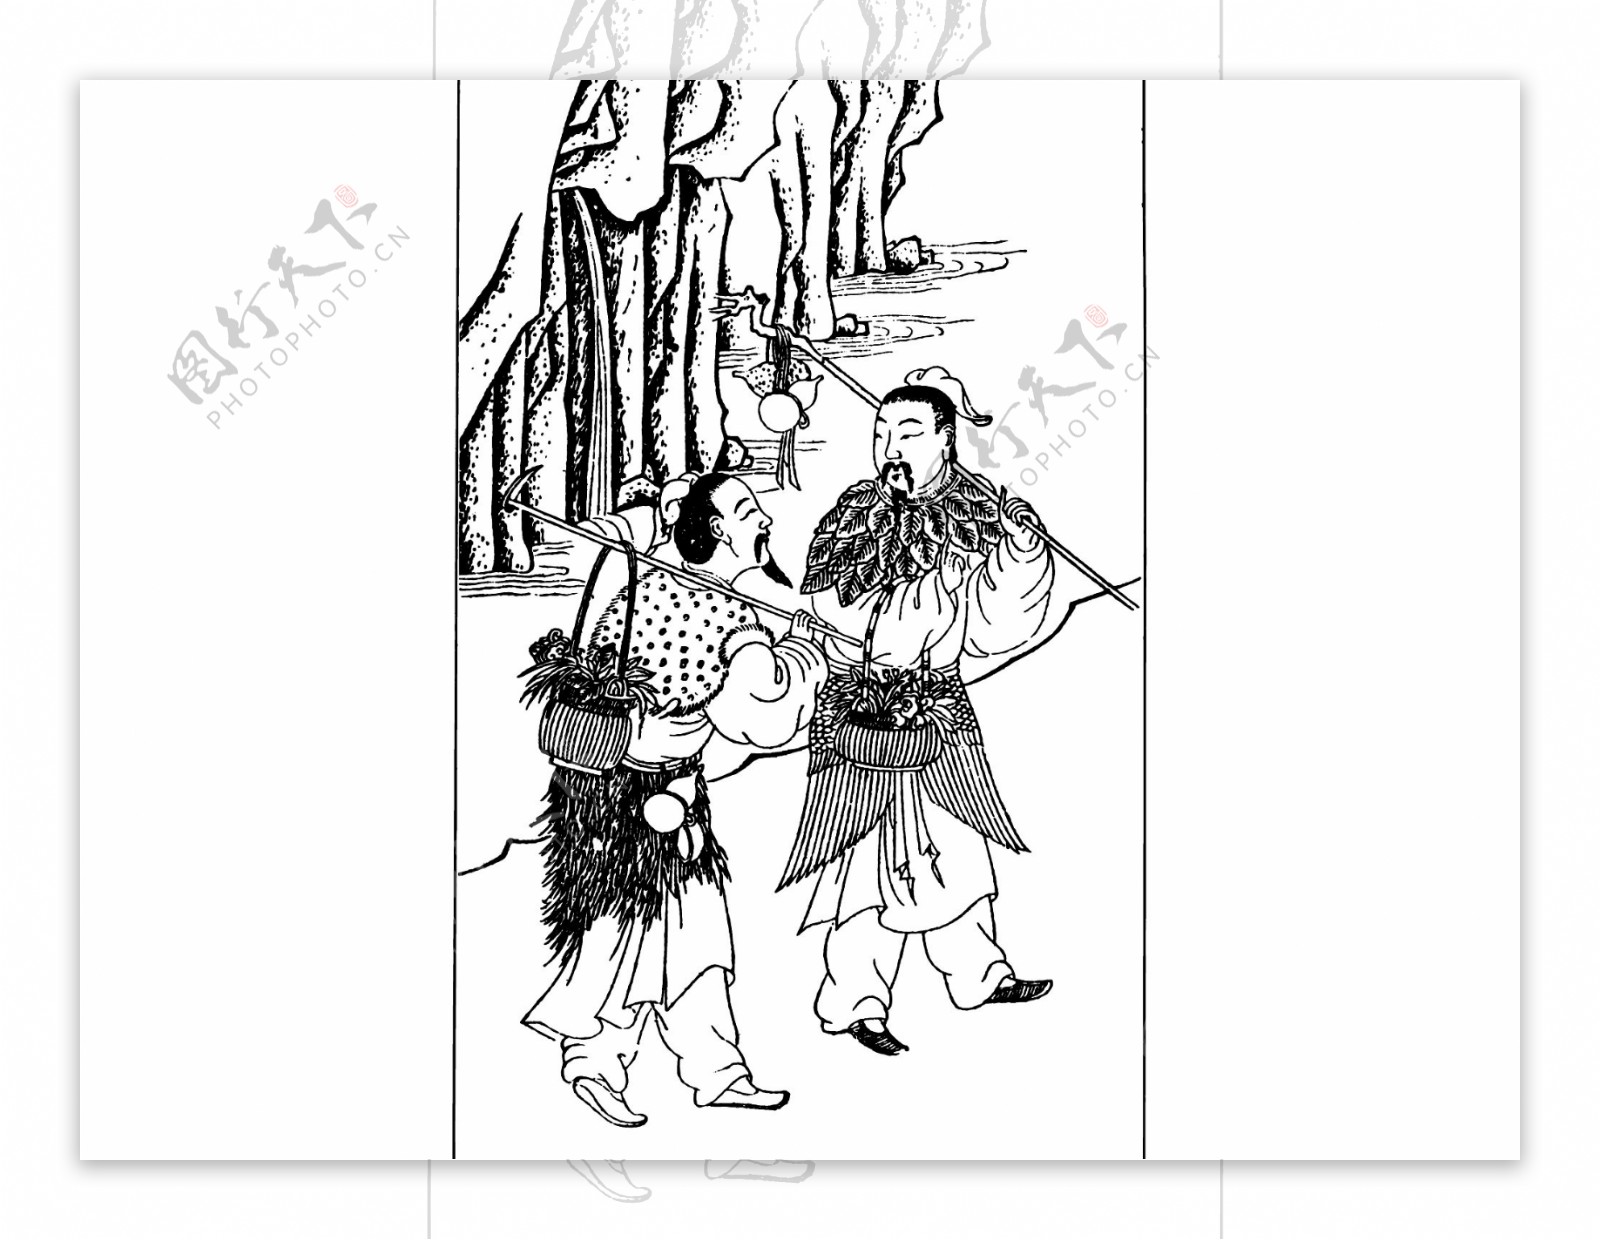 中国古人物生活插画素材134